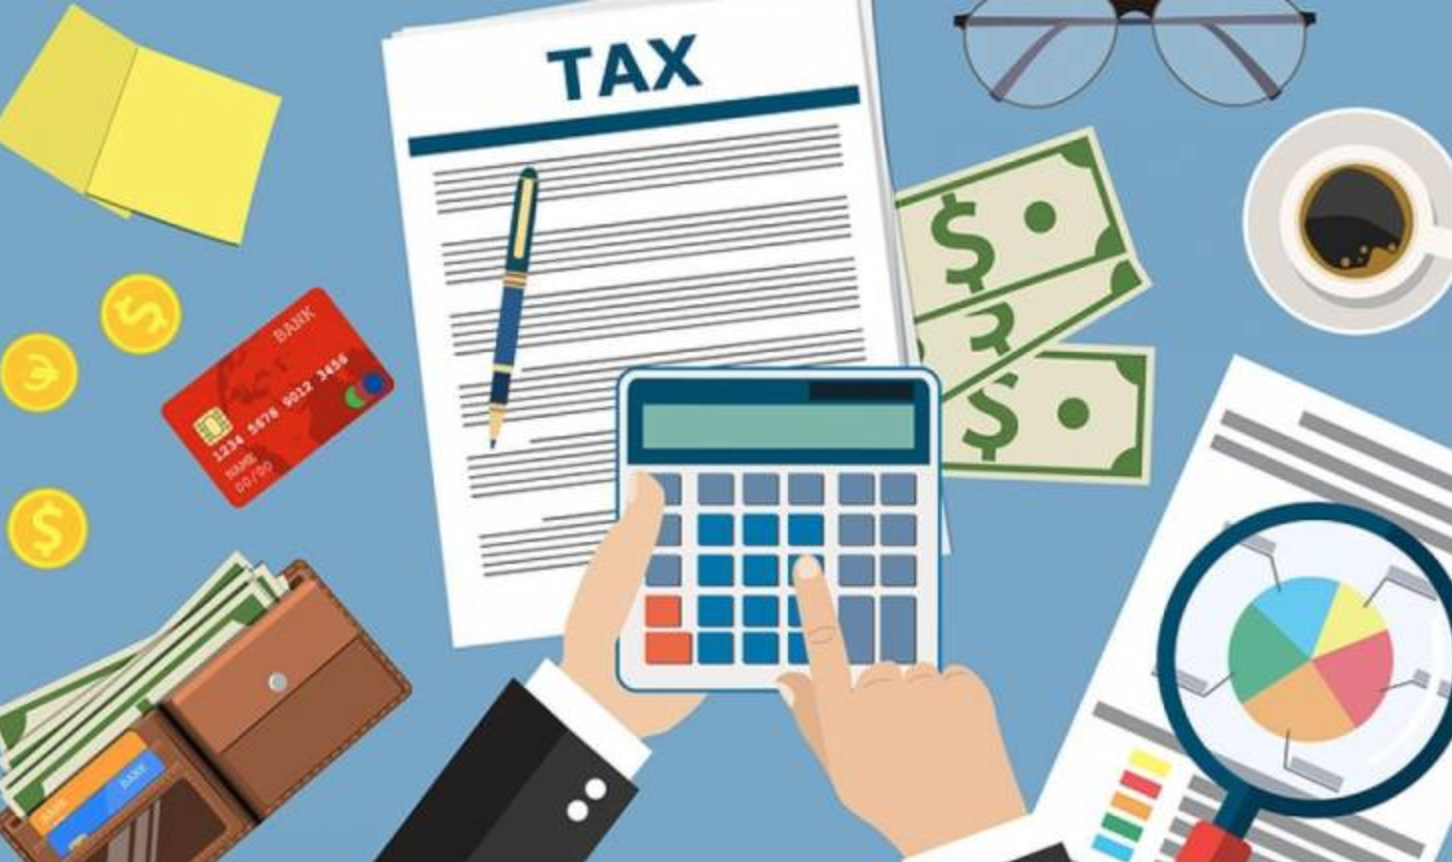 Trình Quốc hội về giảm thuế thu nhập doanh nghiệp cho doanh nghiệp nhỏ và siêu nhỏ